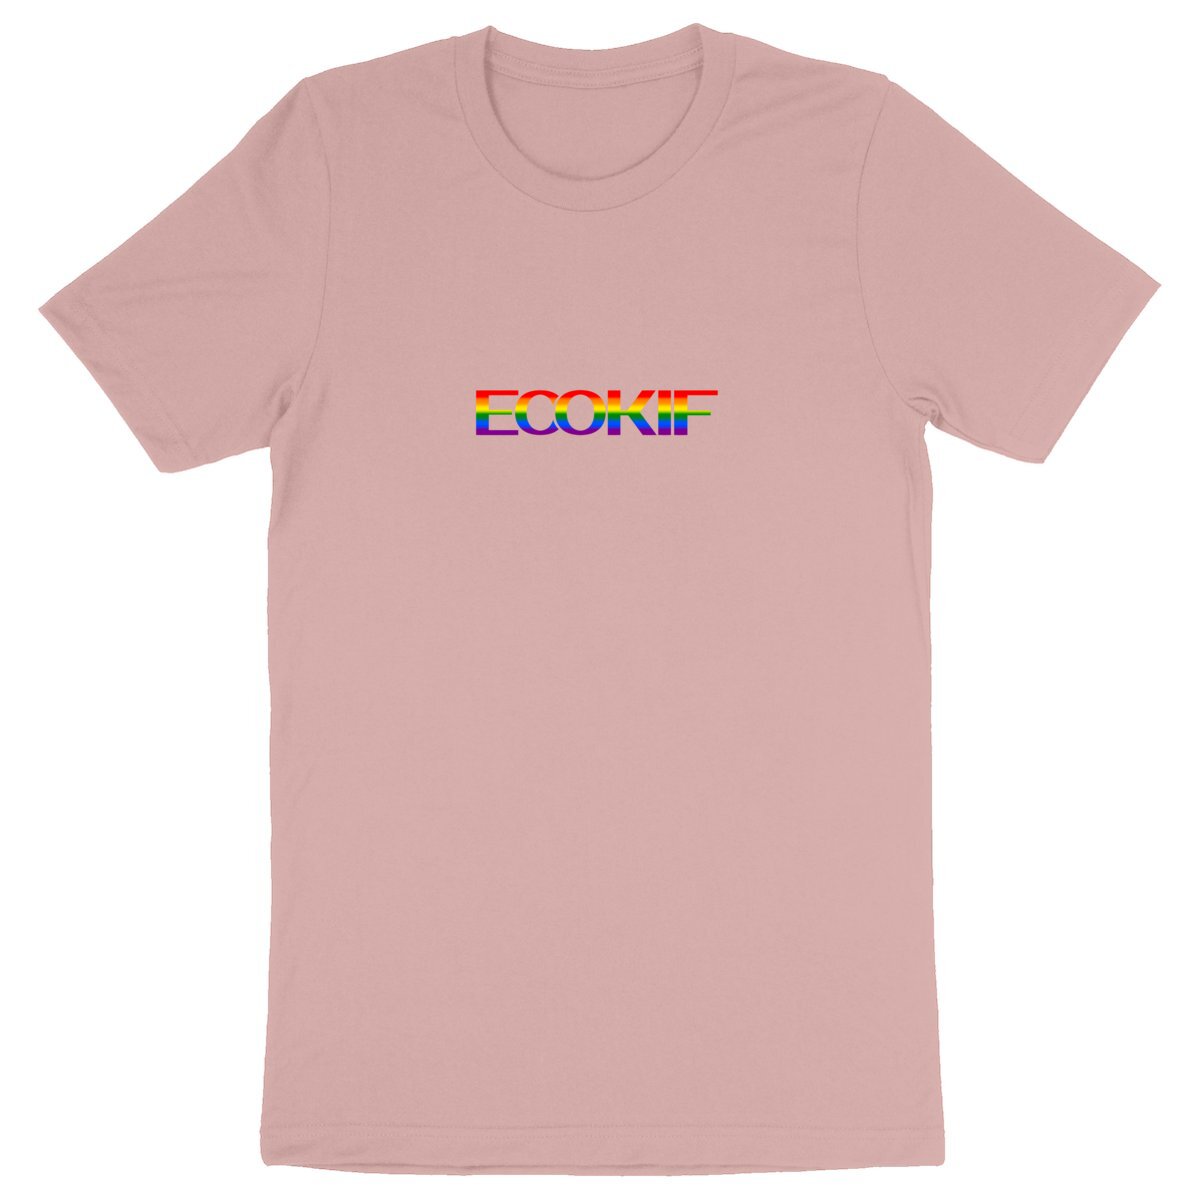 T-Shirt Unisexe Ecokif Pride - Ecokif Basic